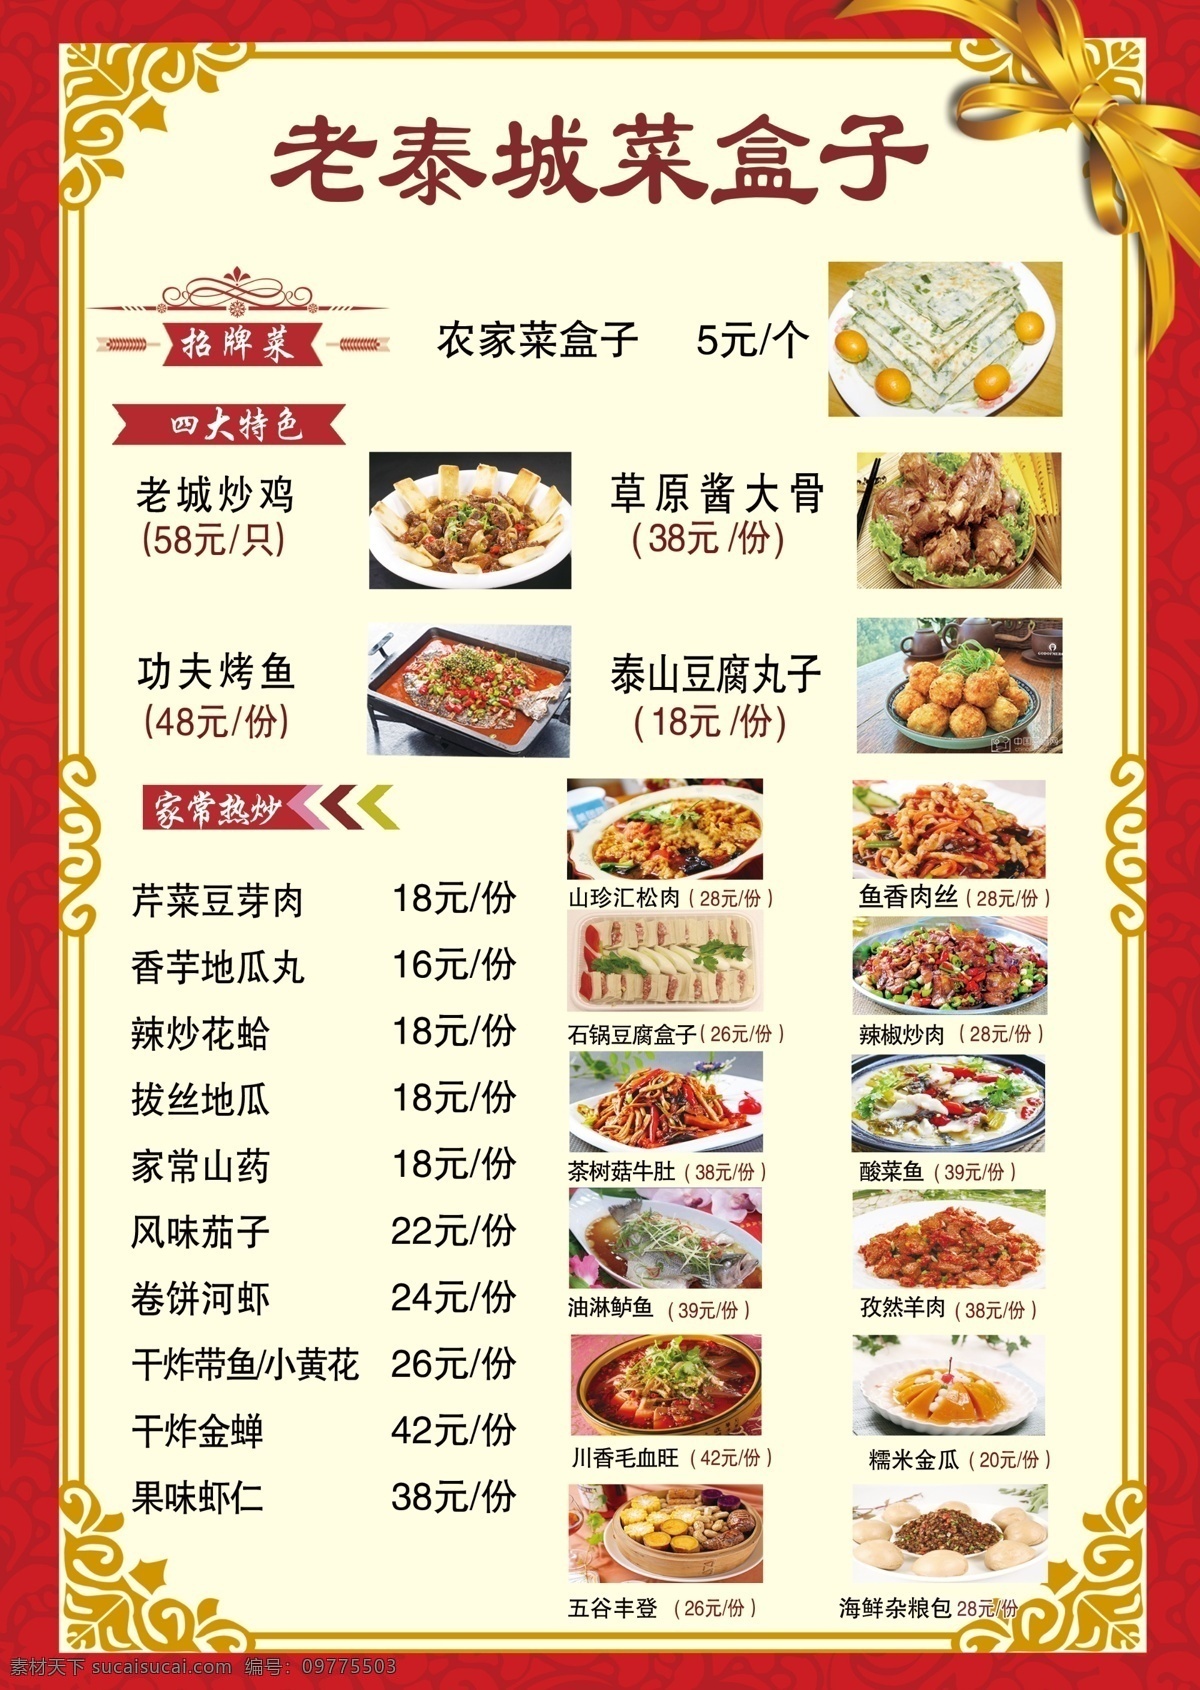 老 泰 城 菜 盒子 台卡 饭店菜单 招牌菜品 特色菜品 家常菜 菜单菜谱